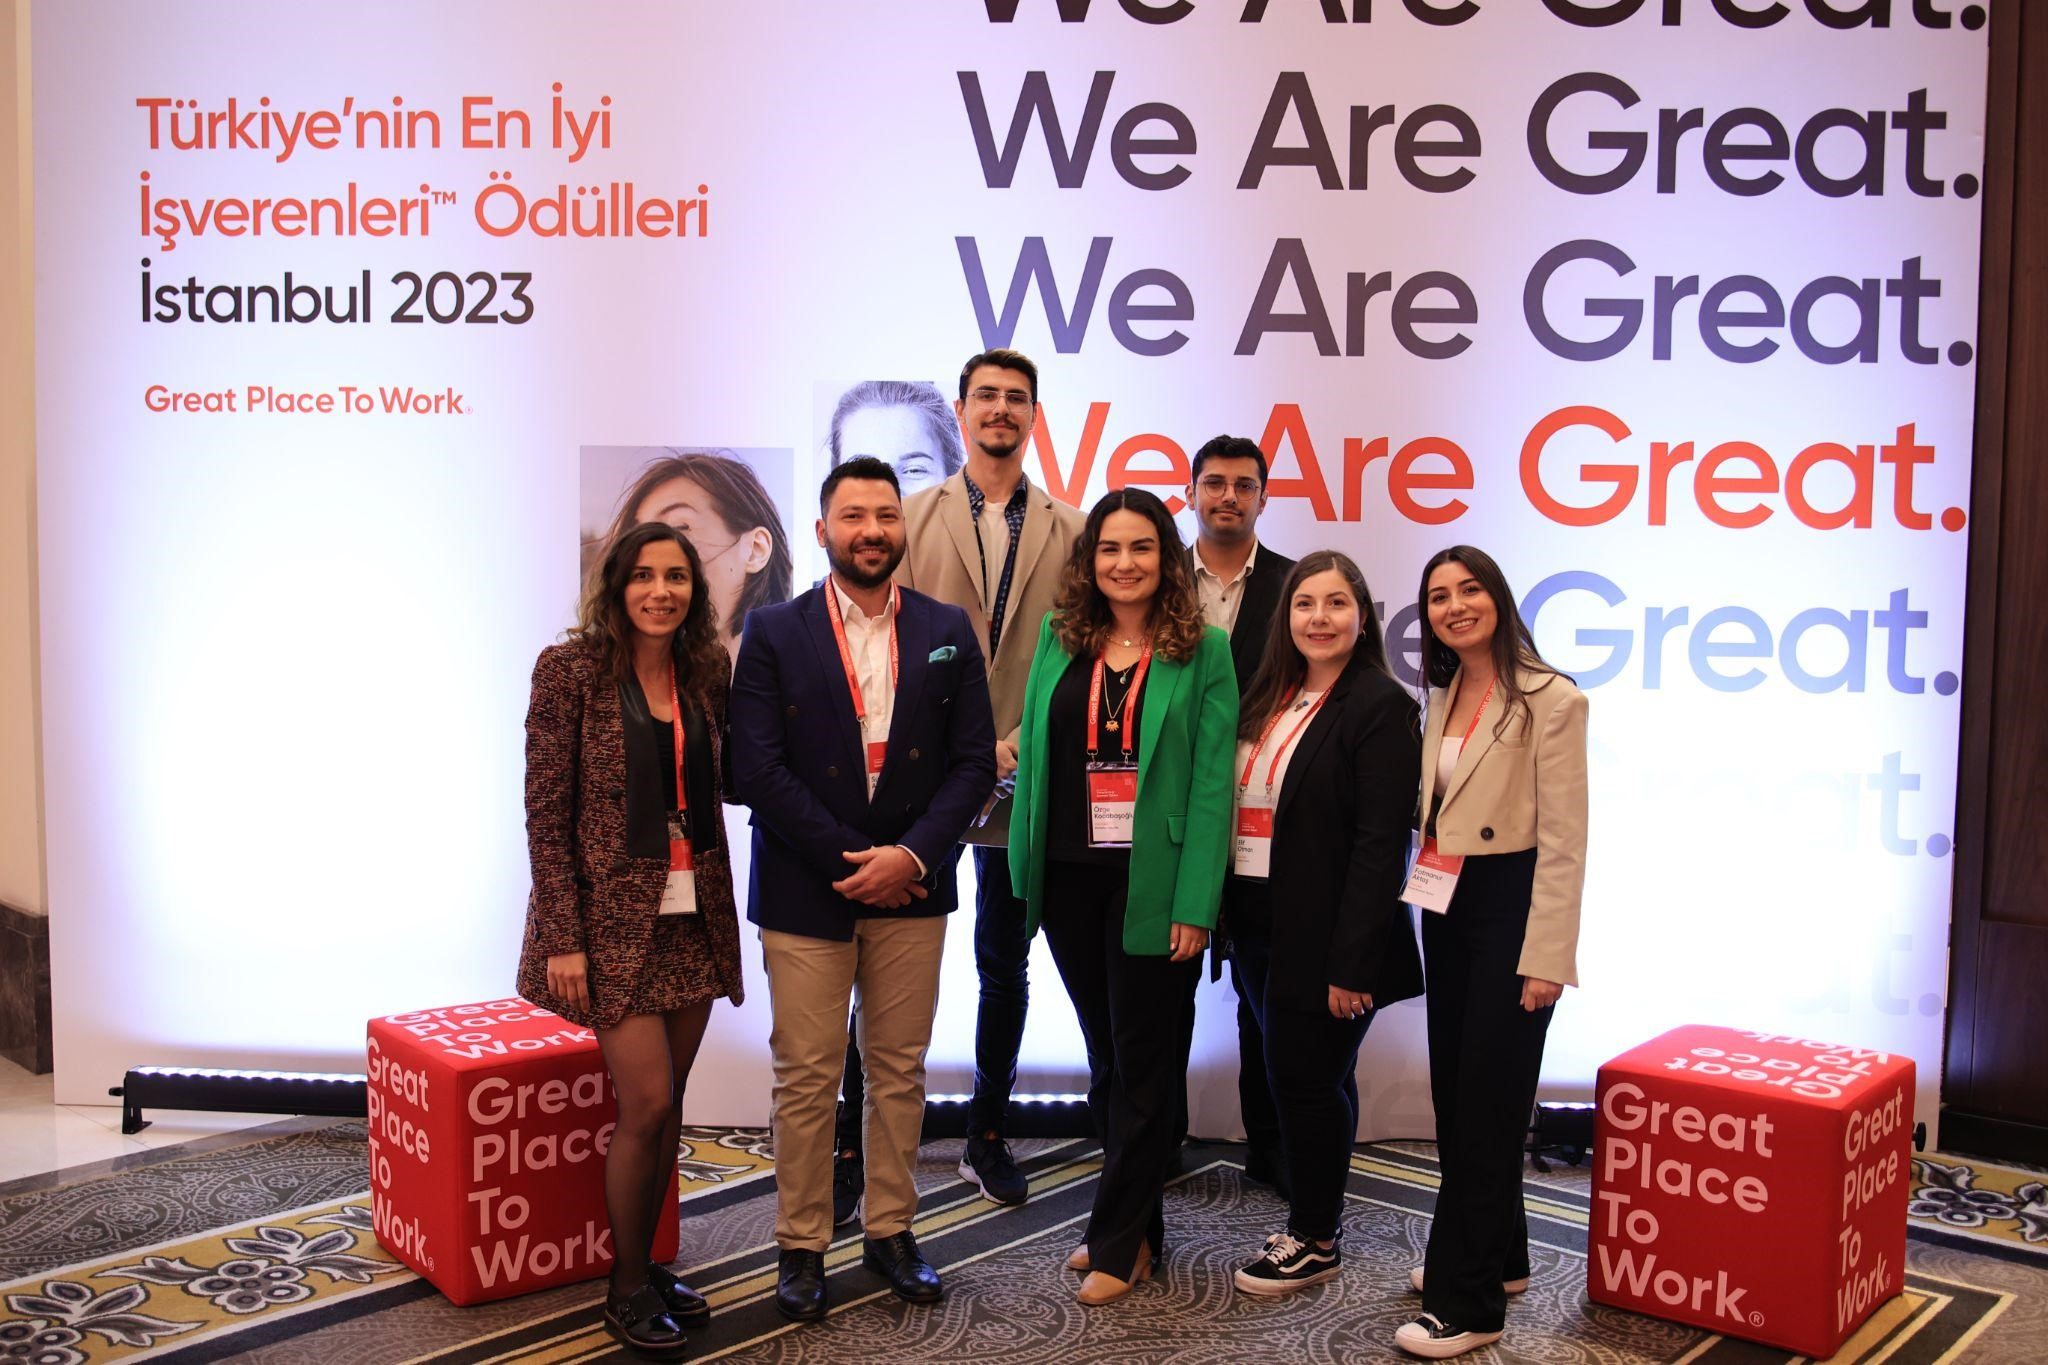 Yolcu360 bir kez daha Türkiye’nin en iyi işverenleri listesinde